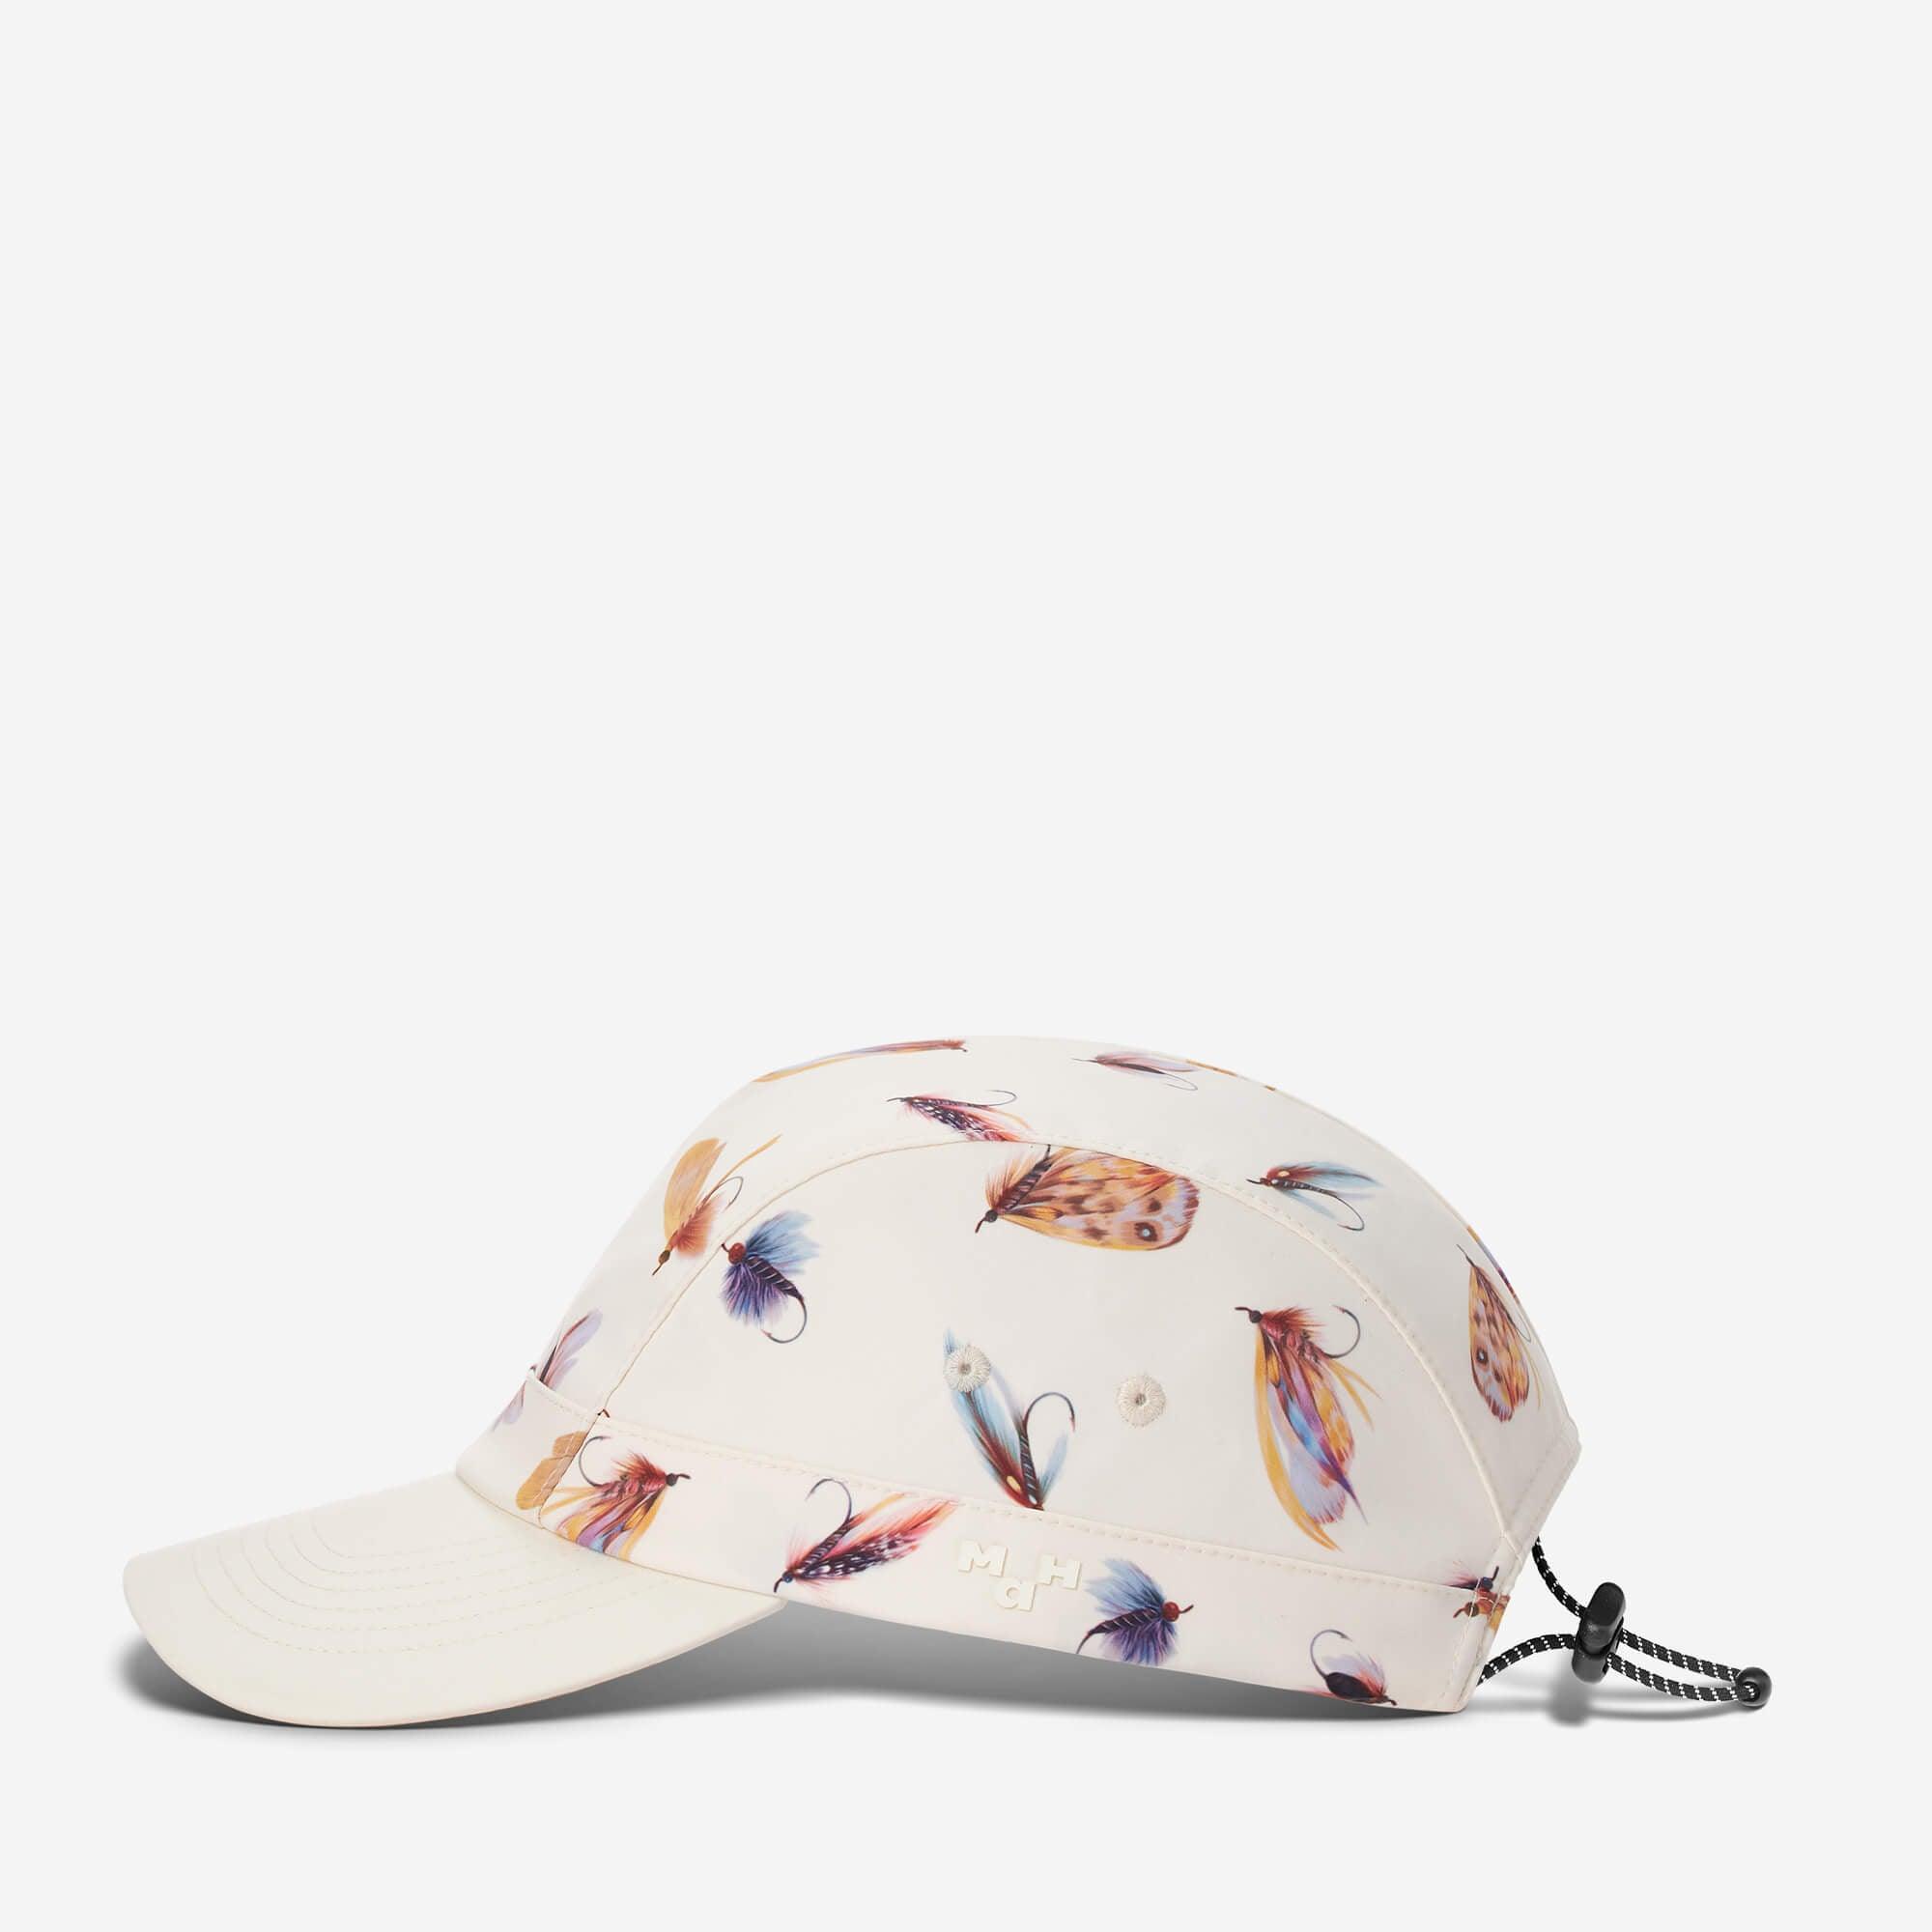 MaH Sun Hat For Teens - Printing Cap